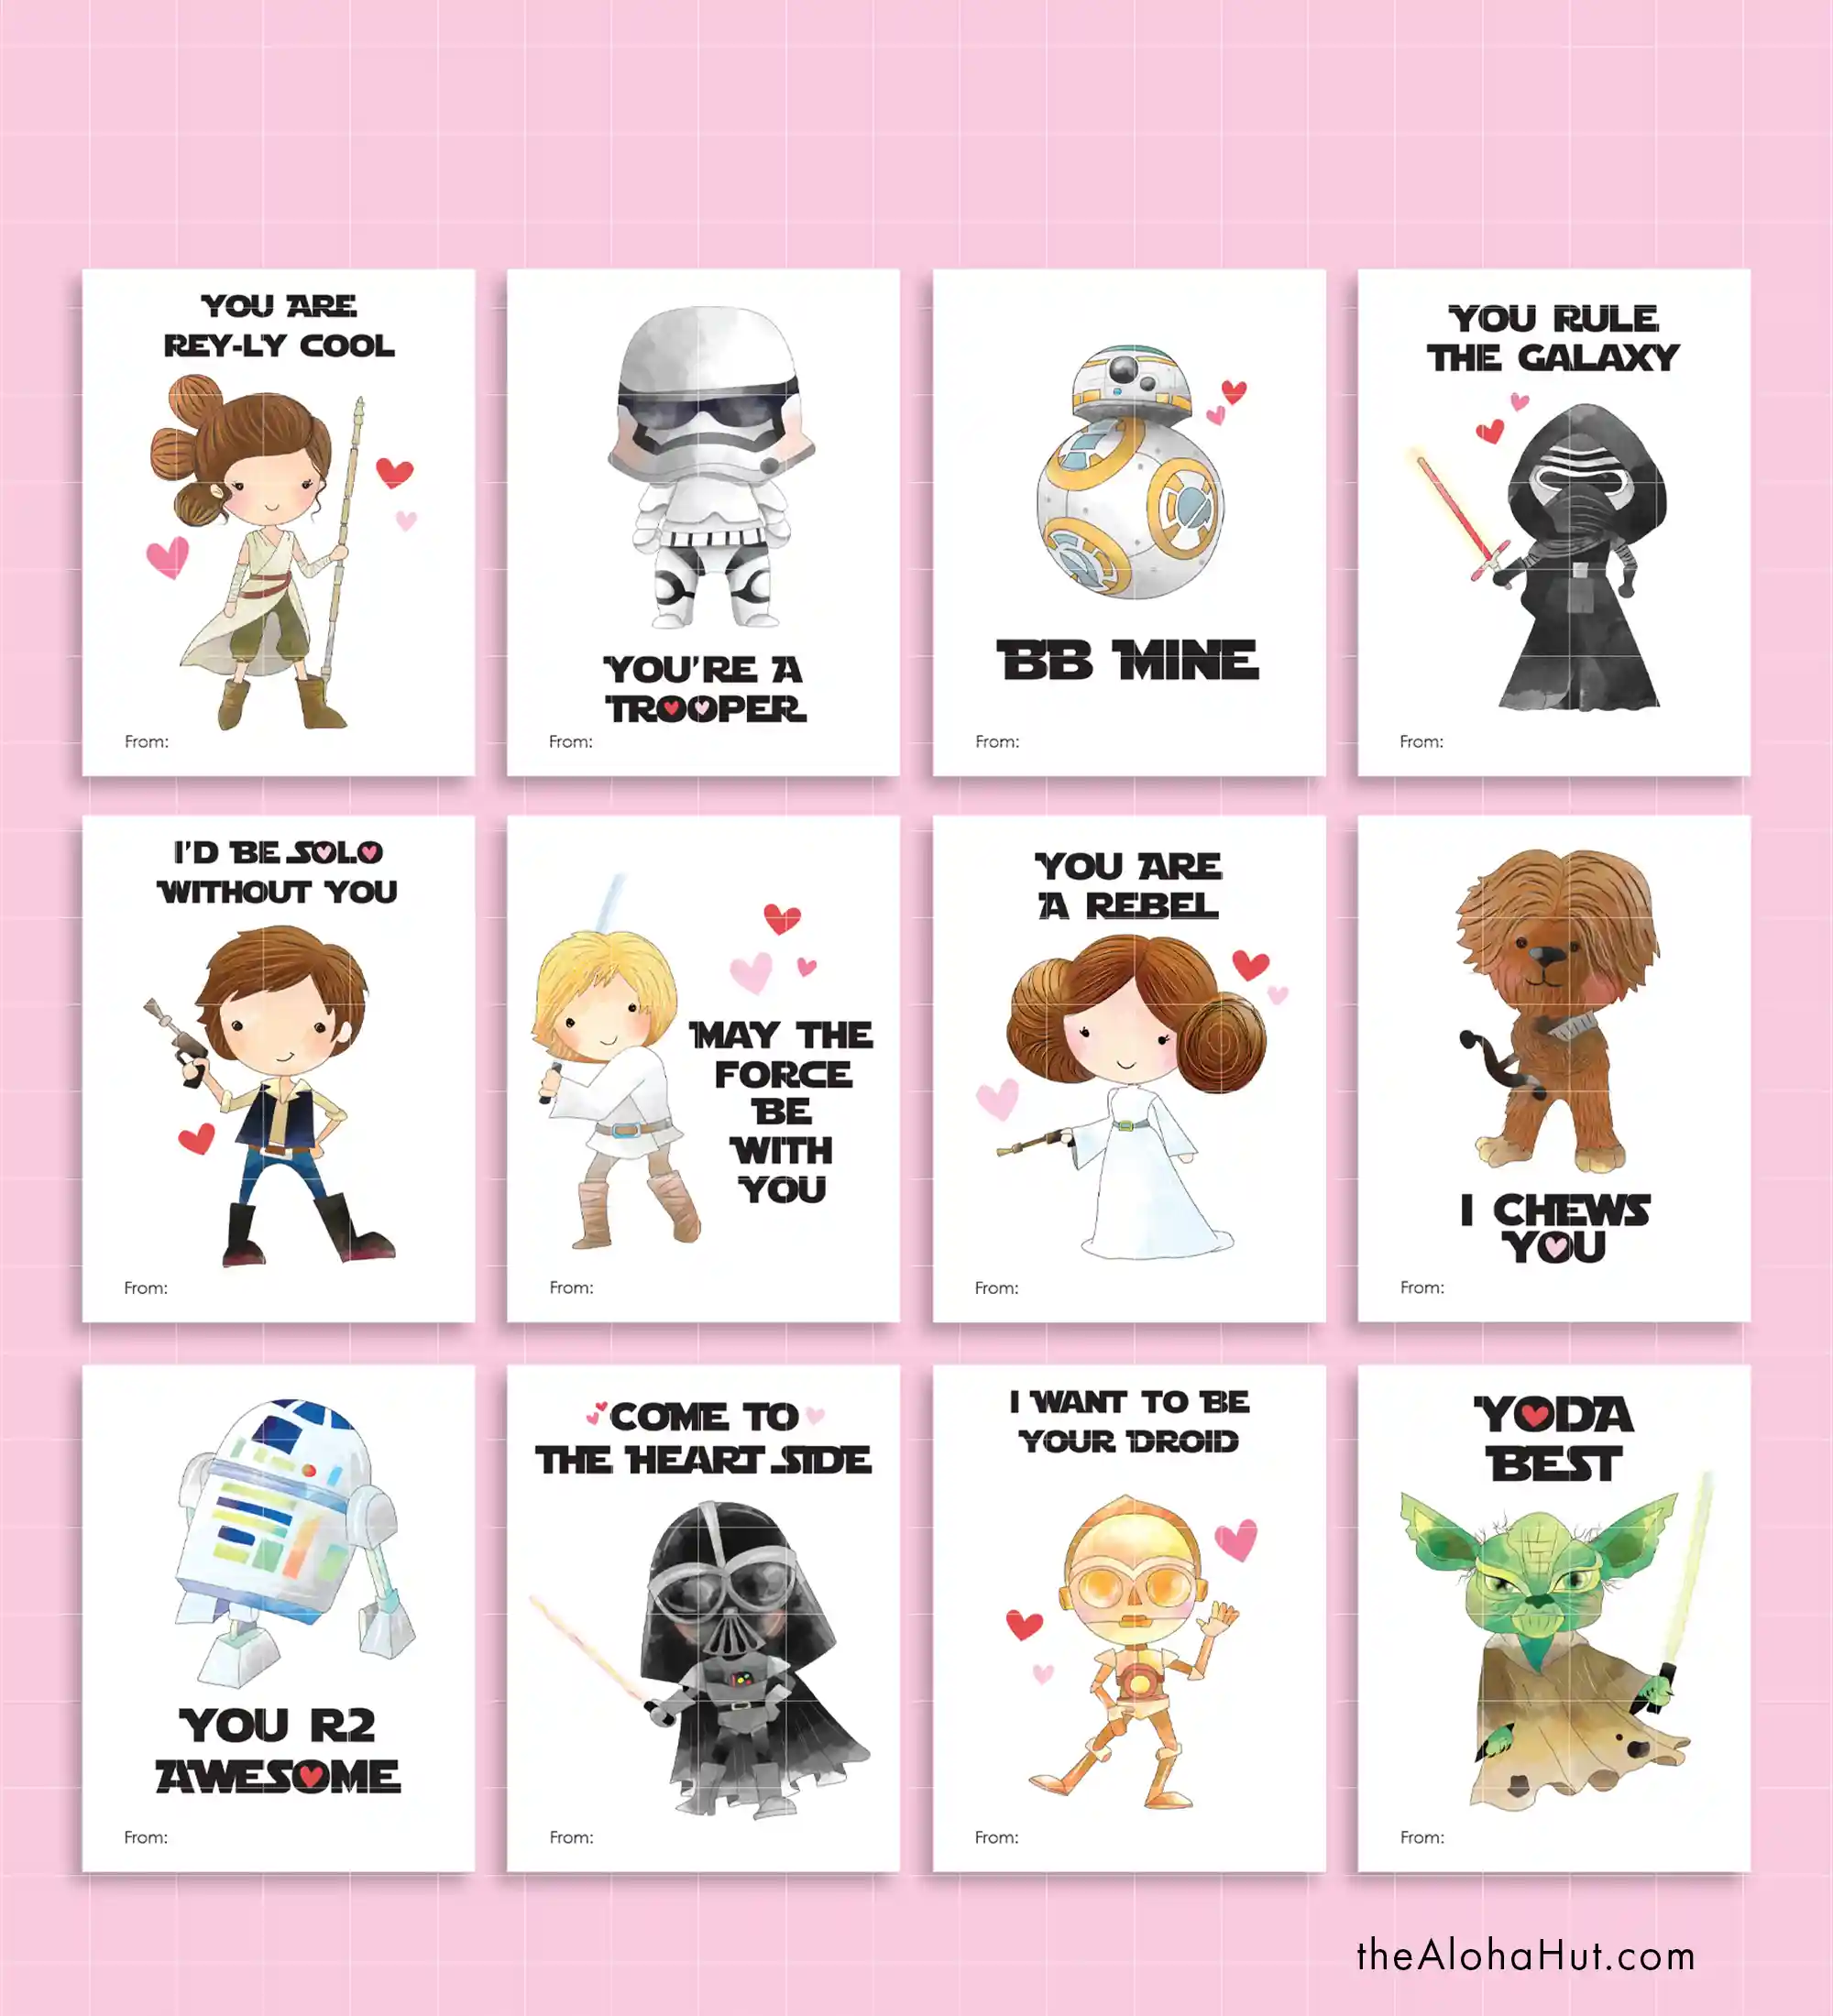 Fun & Easy Kids Valentine's Day Card Ideas - Star Wars Valentine